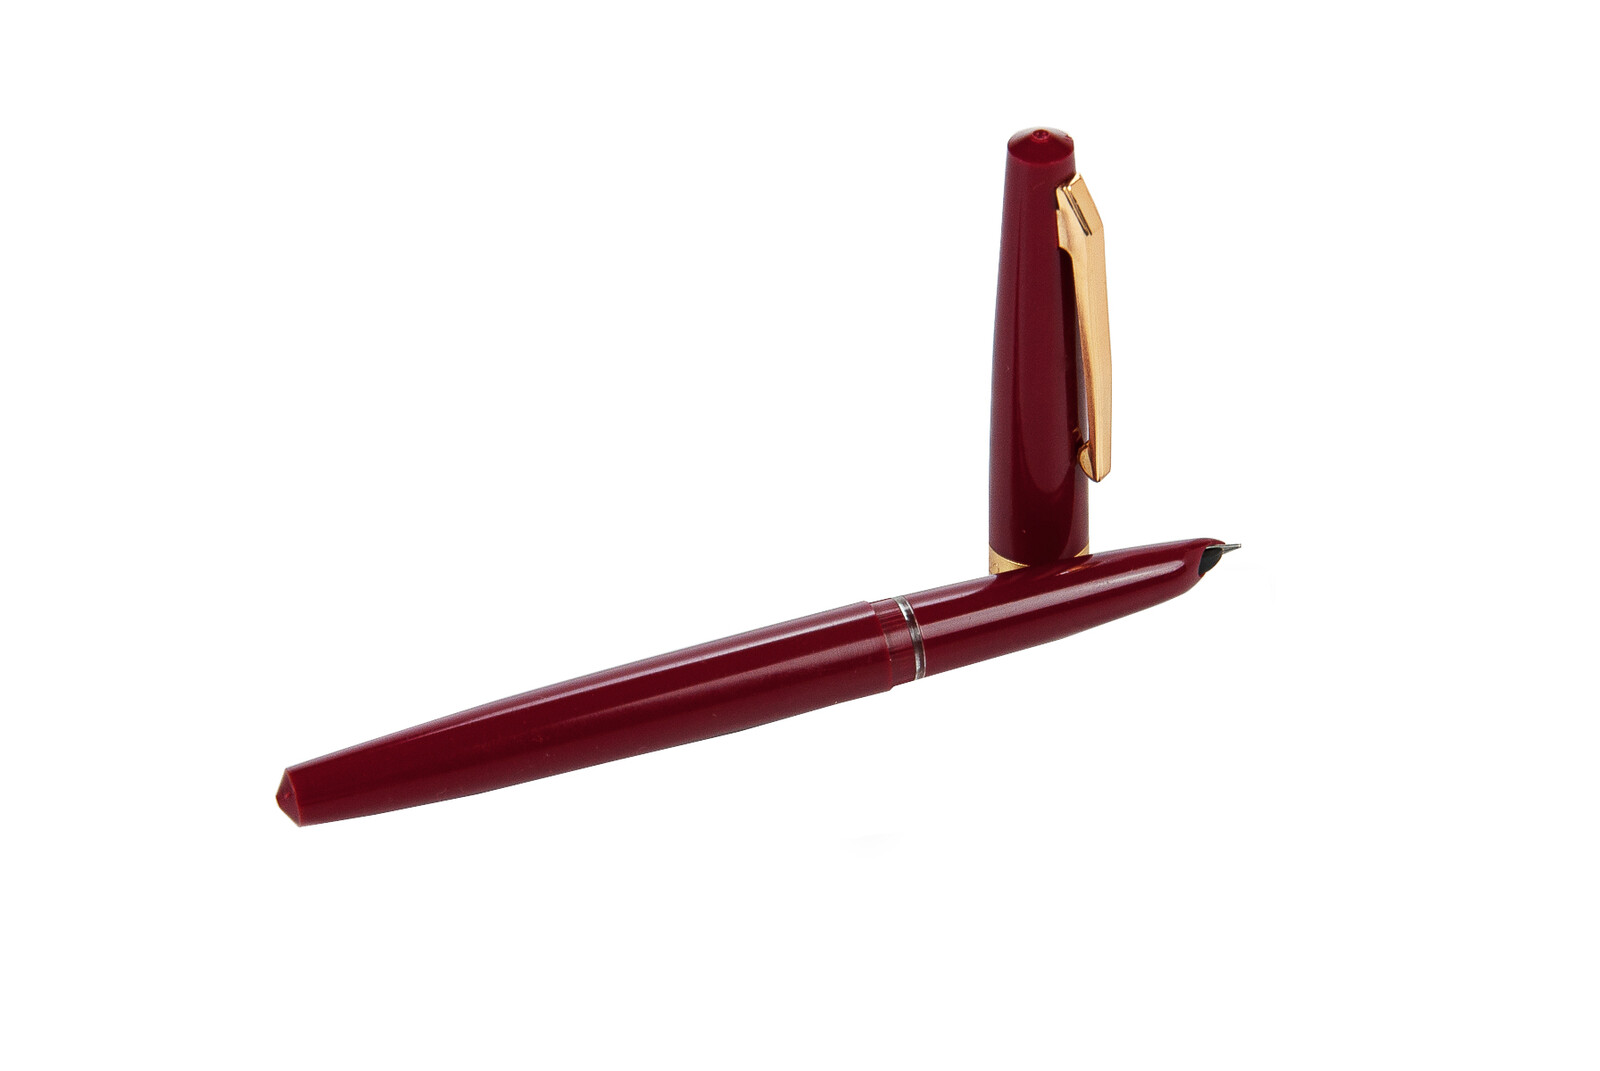 Red Saffron Ink and Claret Red Saffron Pen Set 40 gr - Thumbnail